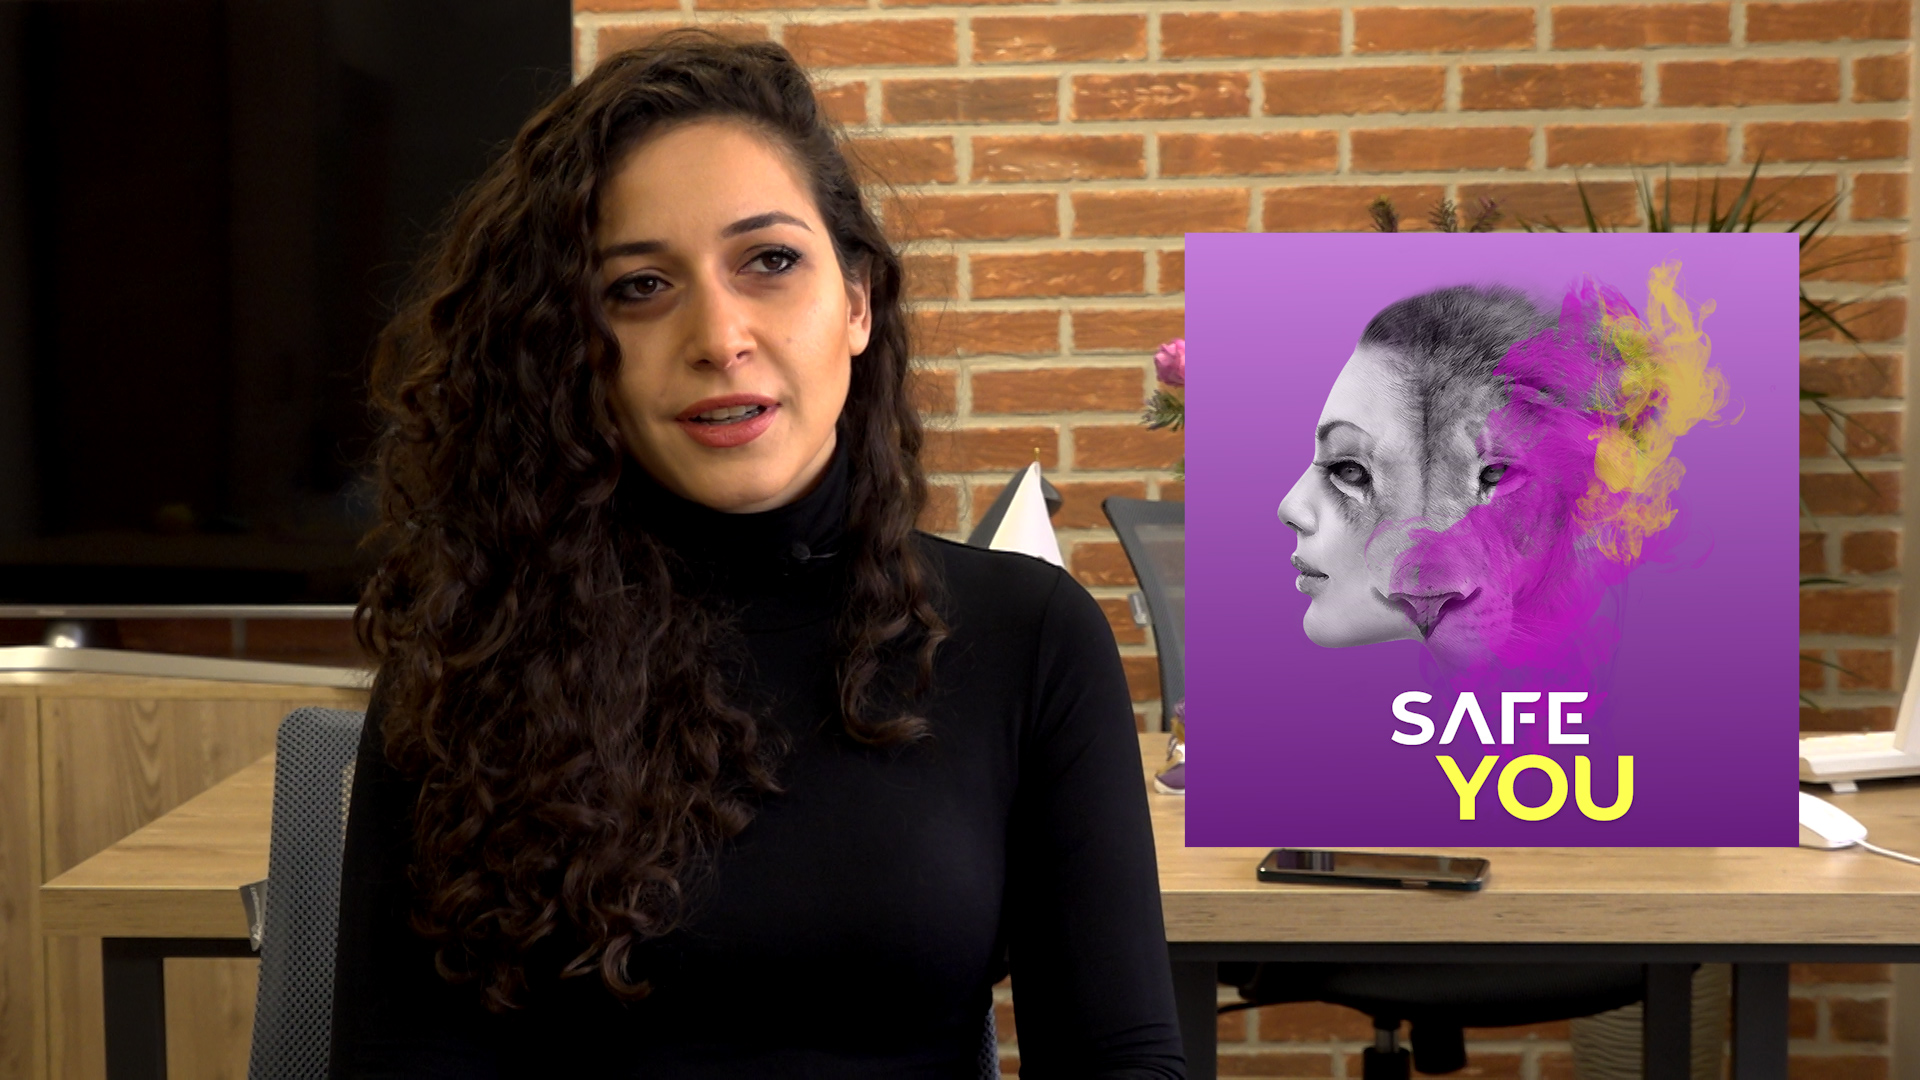 SafeYou. բջջային հավելվածը կանանց պաշտպանում է բռնությունից